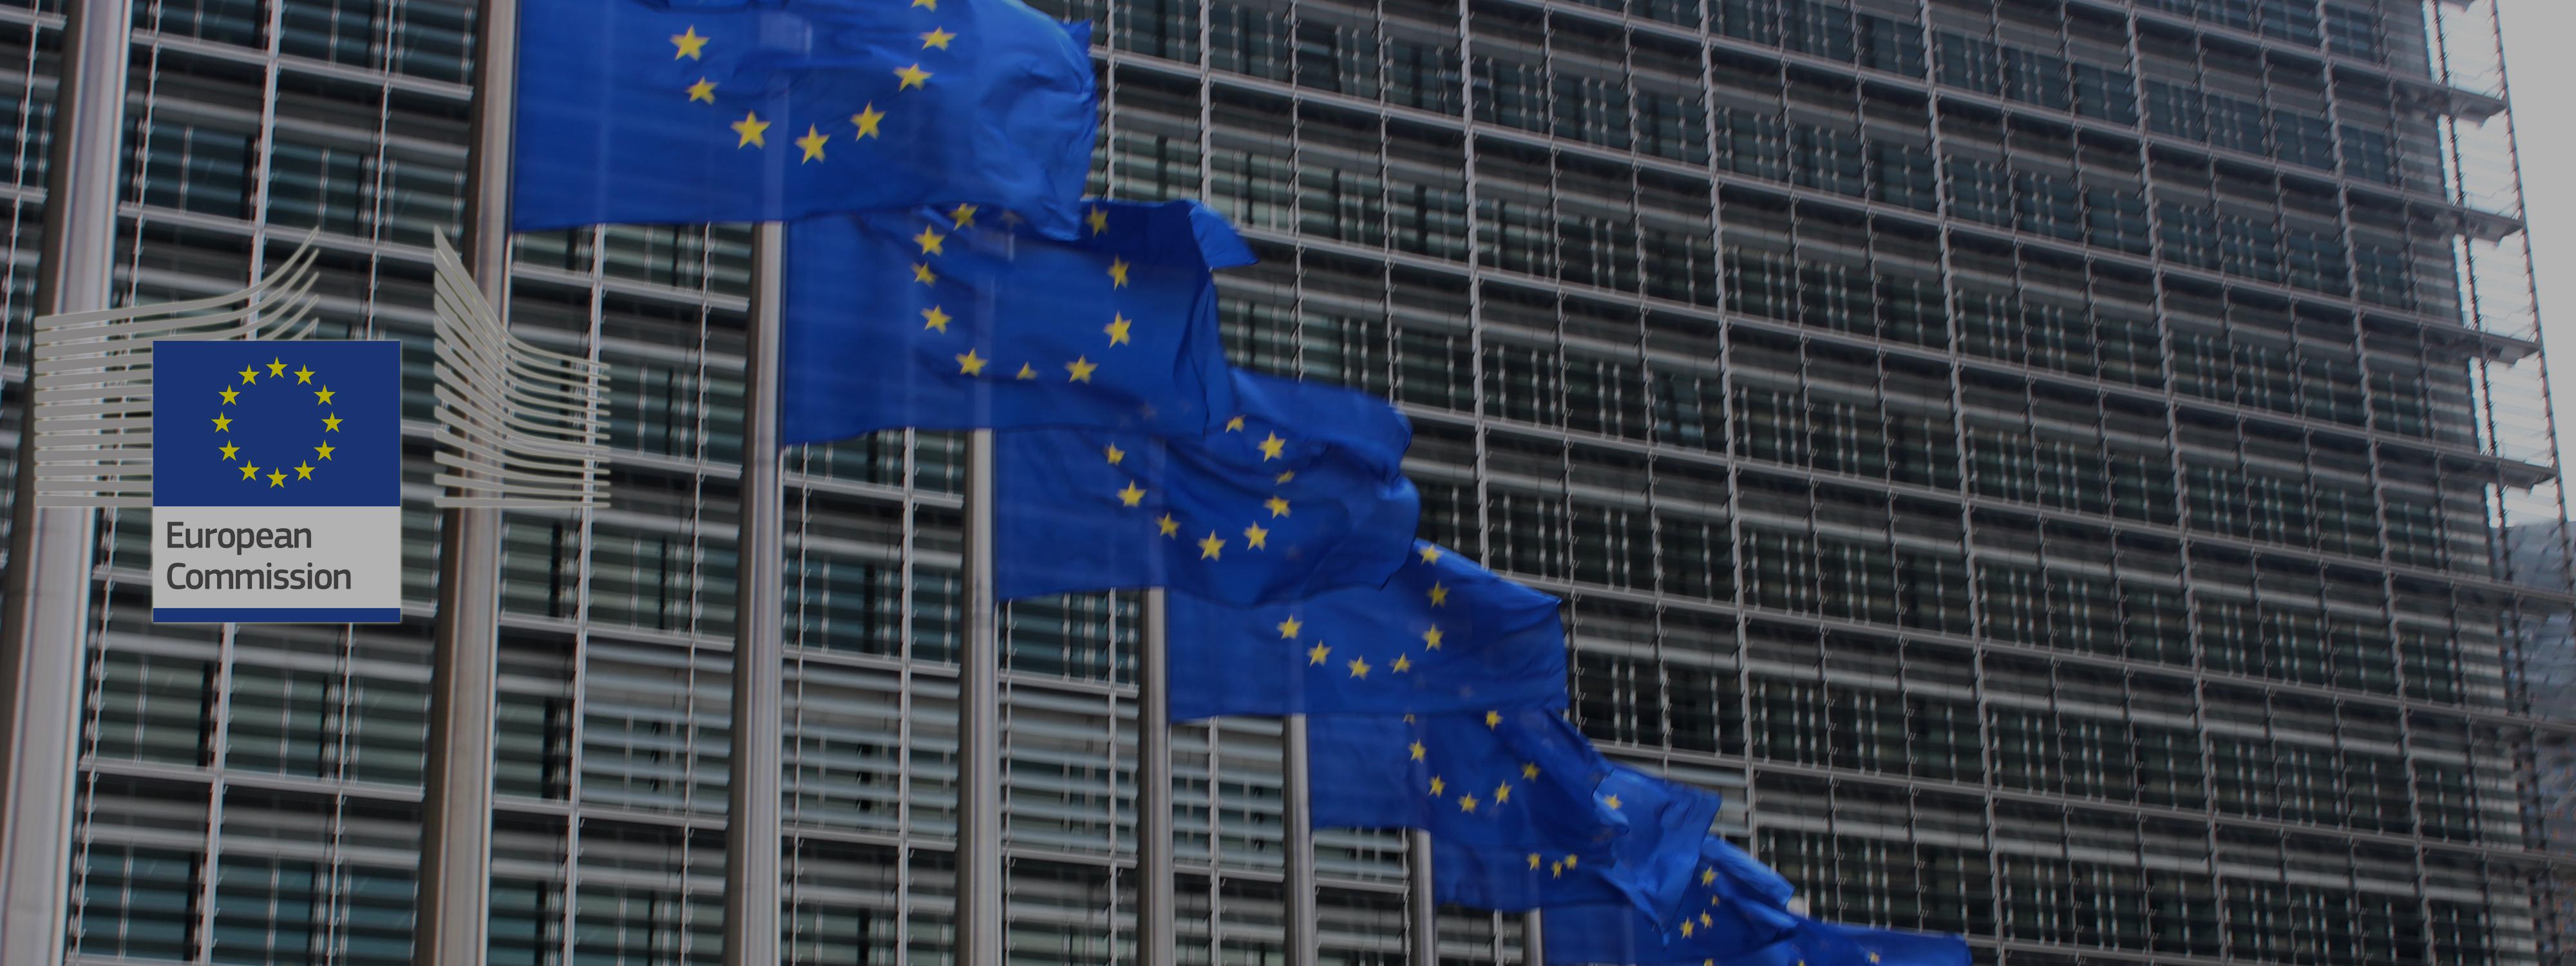 Drapeaux devant la Commission Européenne, Bruxelles